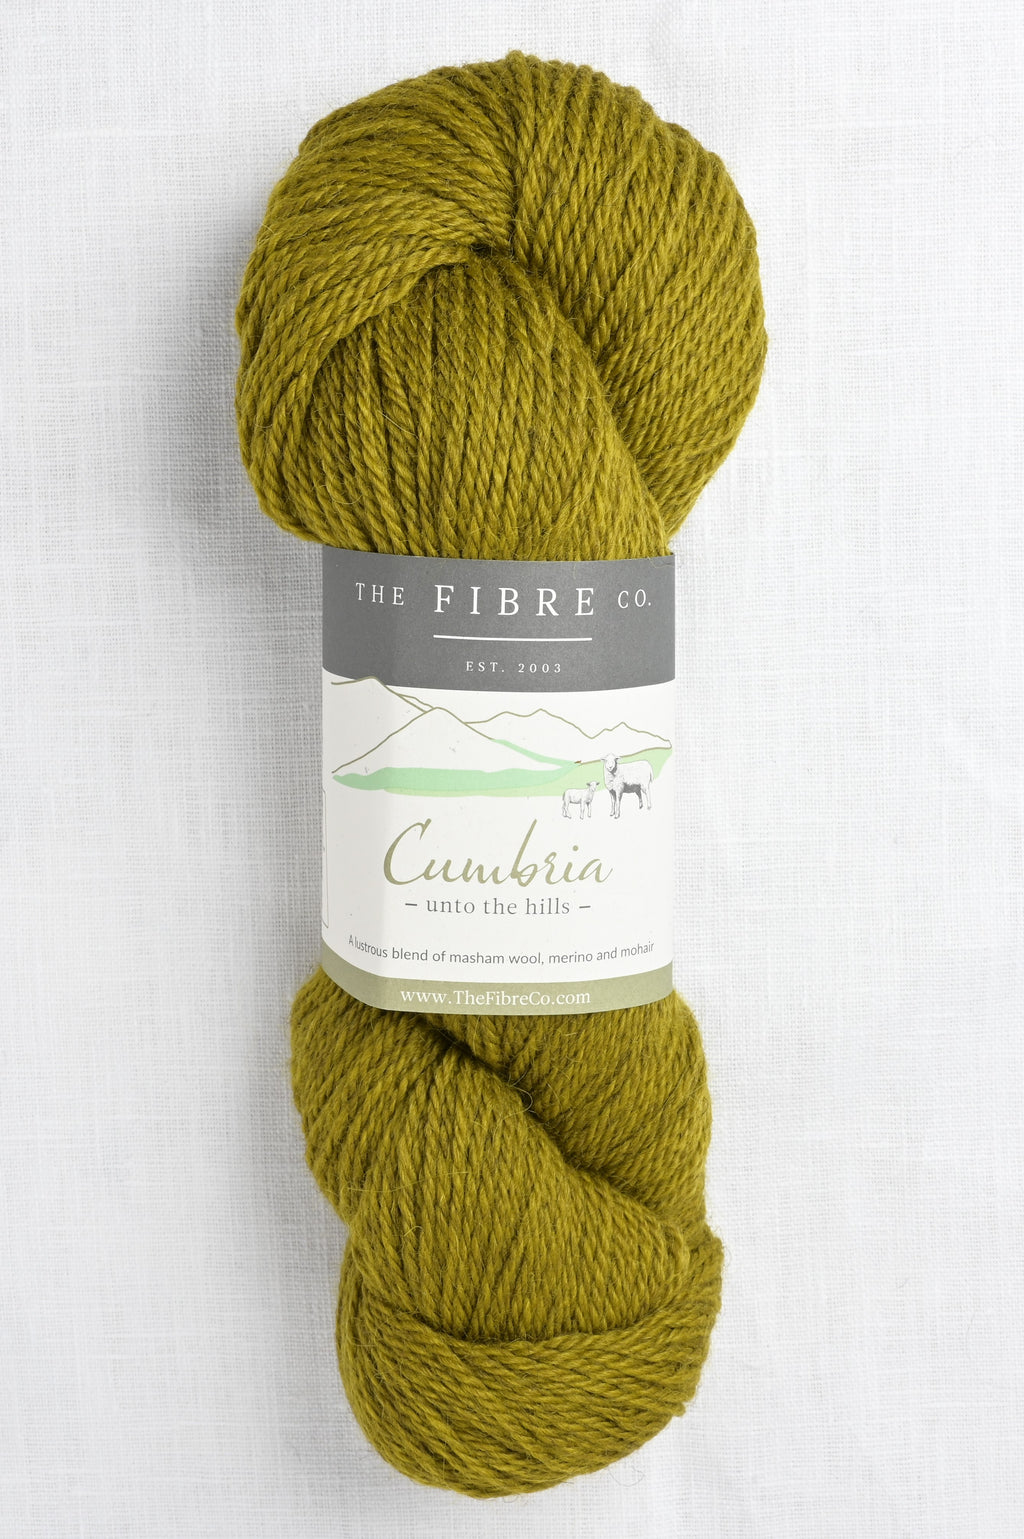 the fibre company cumbria helvellyn